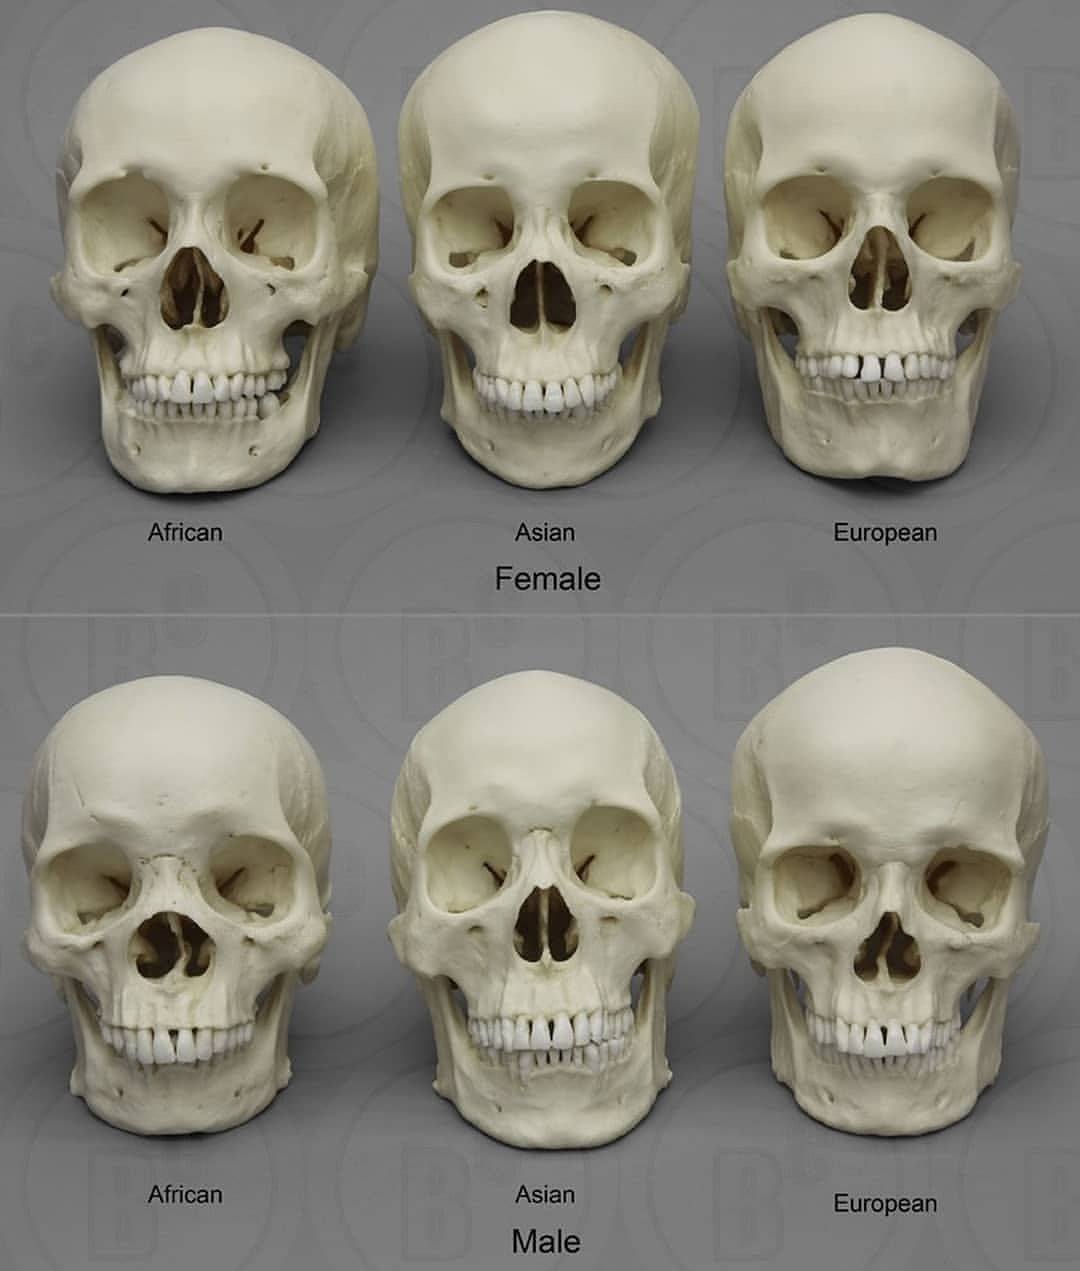 череп негра и белого человека сравнение (99) фото